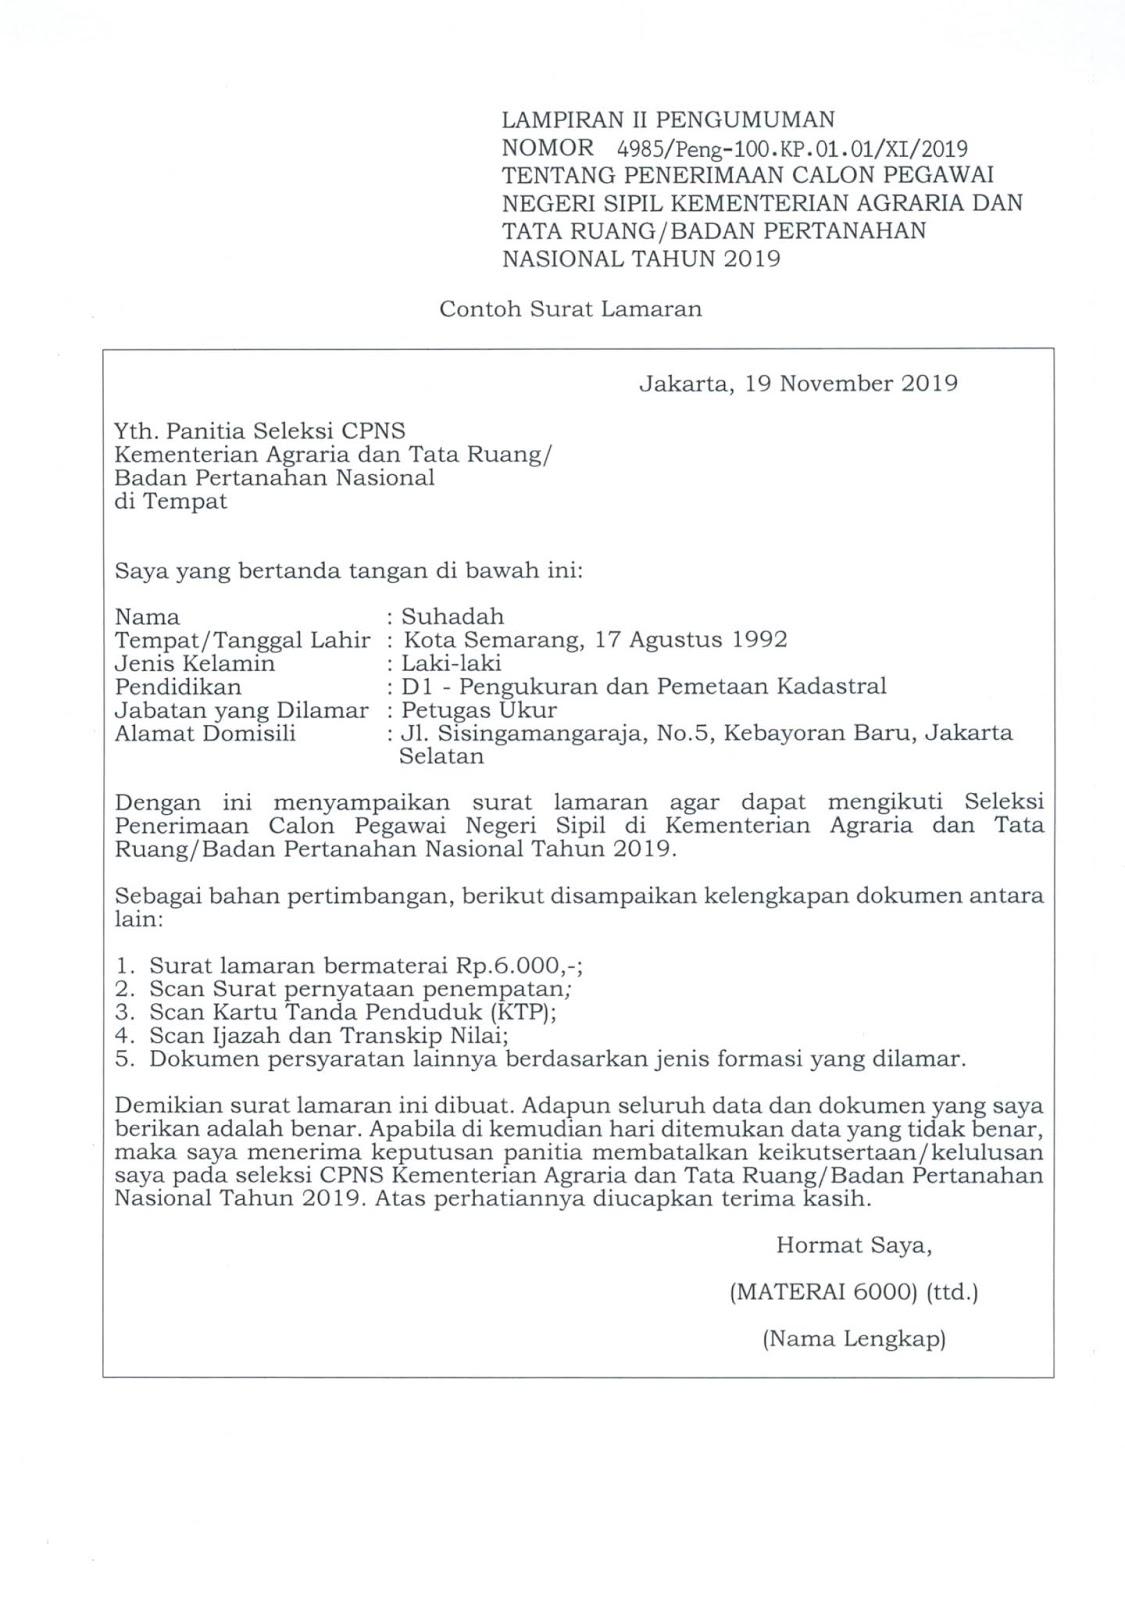 Contoh Format Surat Rayuan Bkns  JamarianceVance